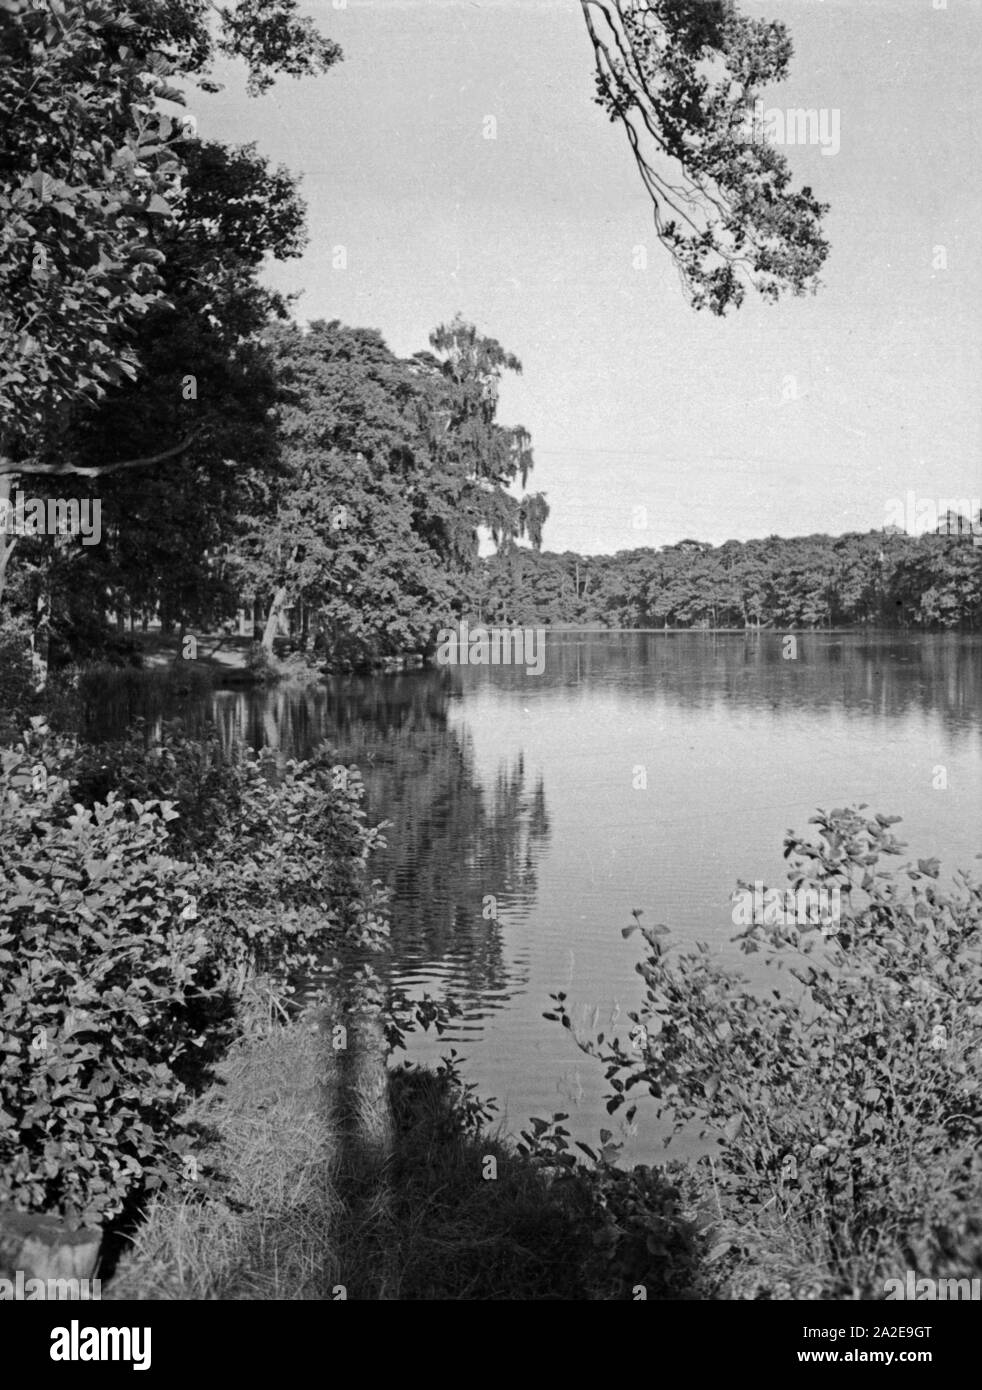 Anlagen im Kurpark von Danzig Glettkau, 1930er Jahre. The health resort parks and gardens of Gdansk Glettkau, 1930s. Stock Photo